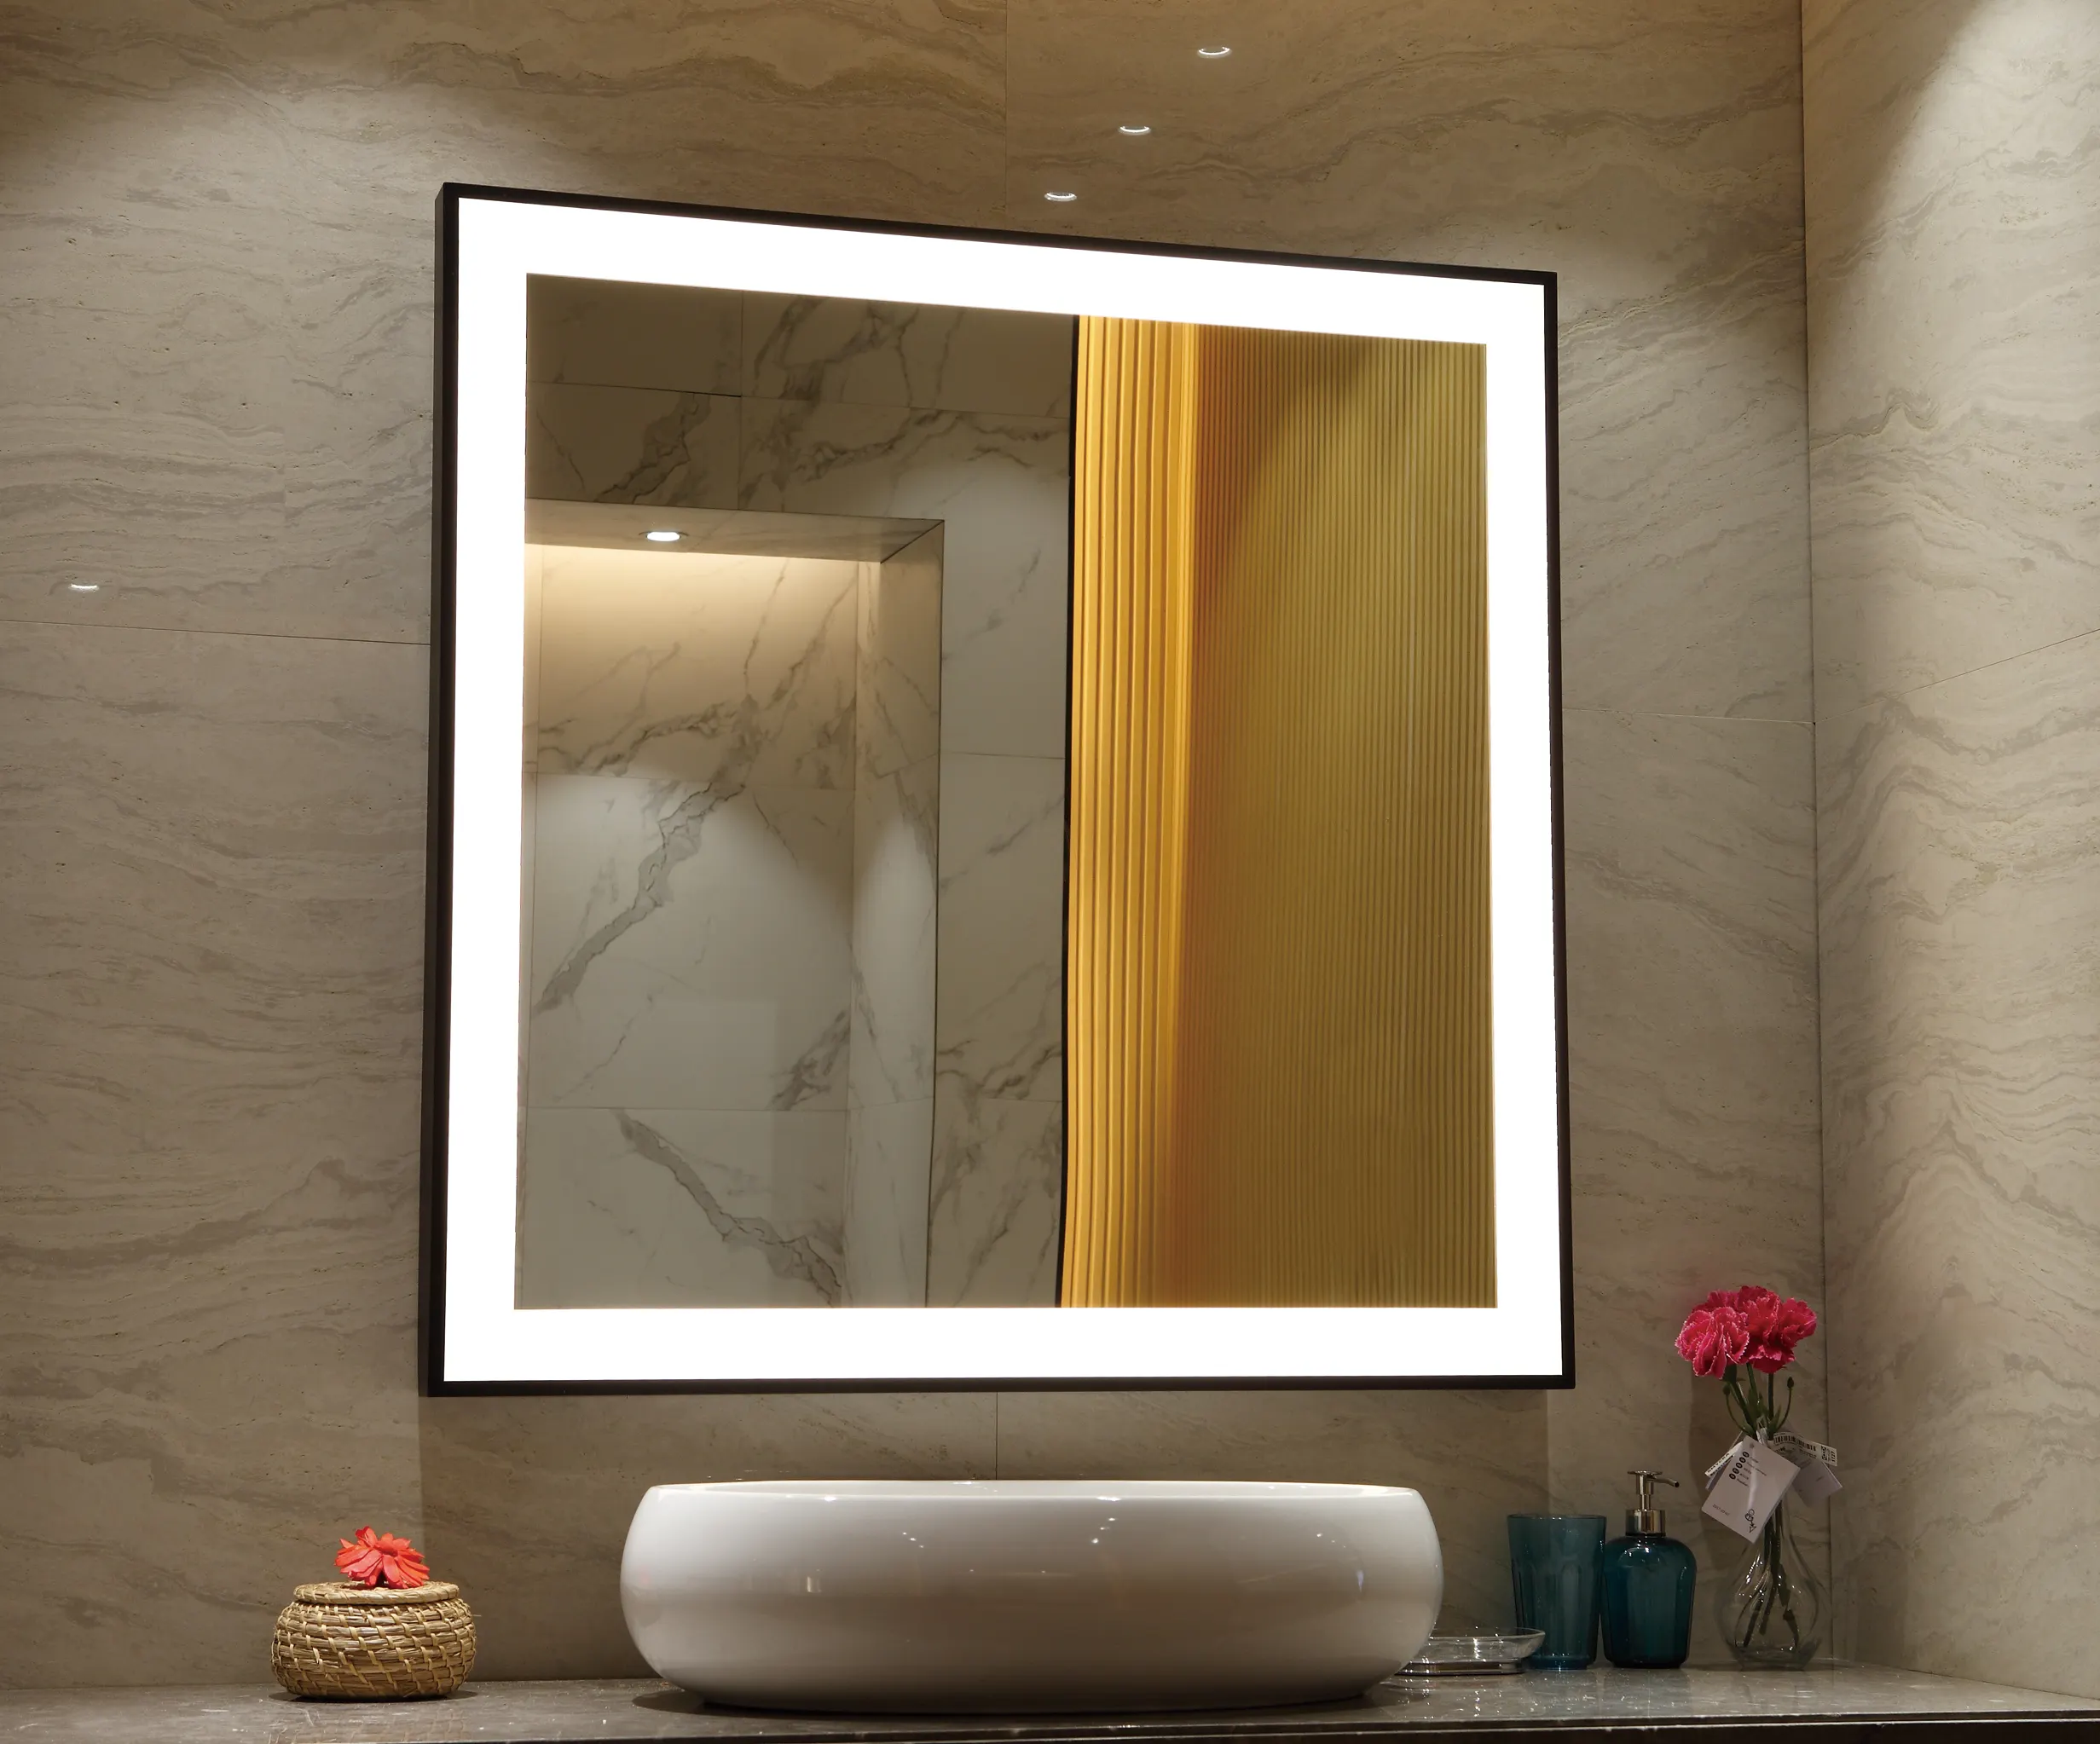 من المصنع مرآة مكياج سهلة التركيب سهلة التركيب على الحائط للحمام الذكي للفنادق مع إضاءة ليد ساعة رقمية مزيل الضباب